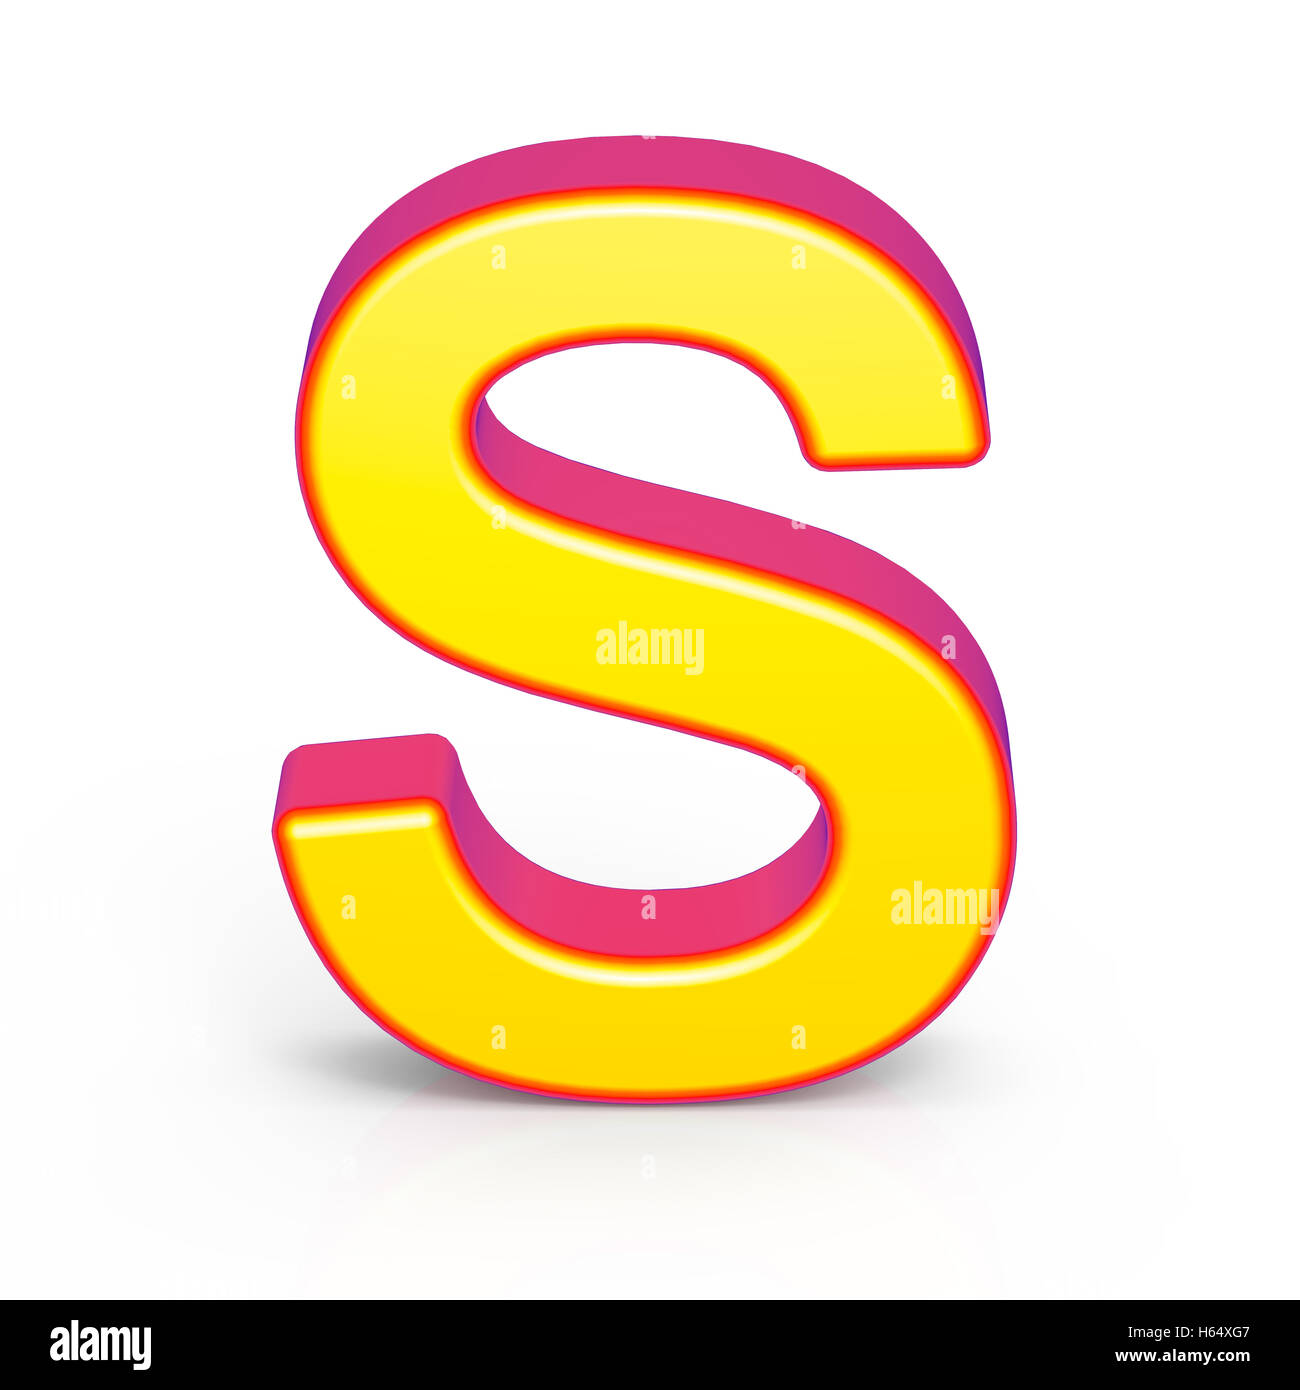 3d rendering golden letter S isolated on white background, 3d illustration Stock Photo